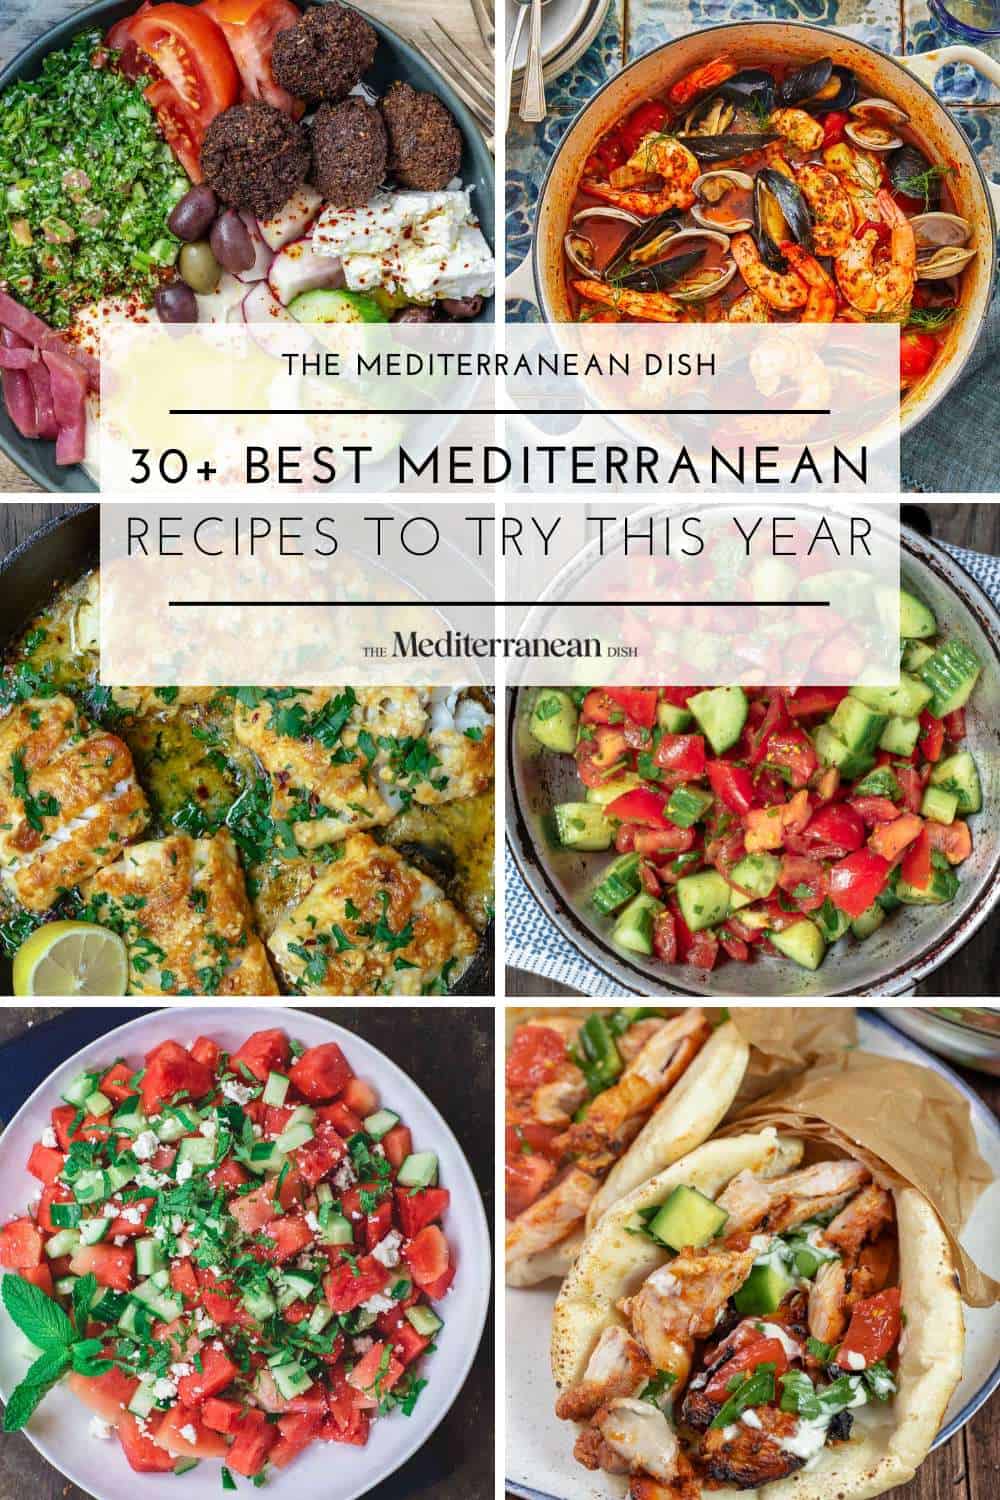 Mediterranean Diet and Cognitive Decline